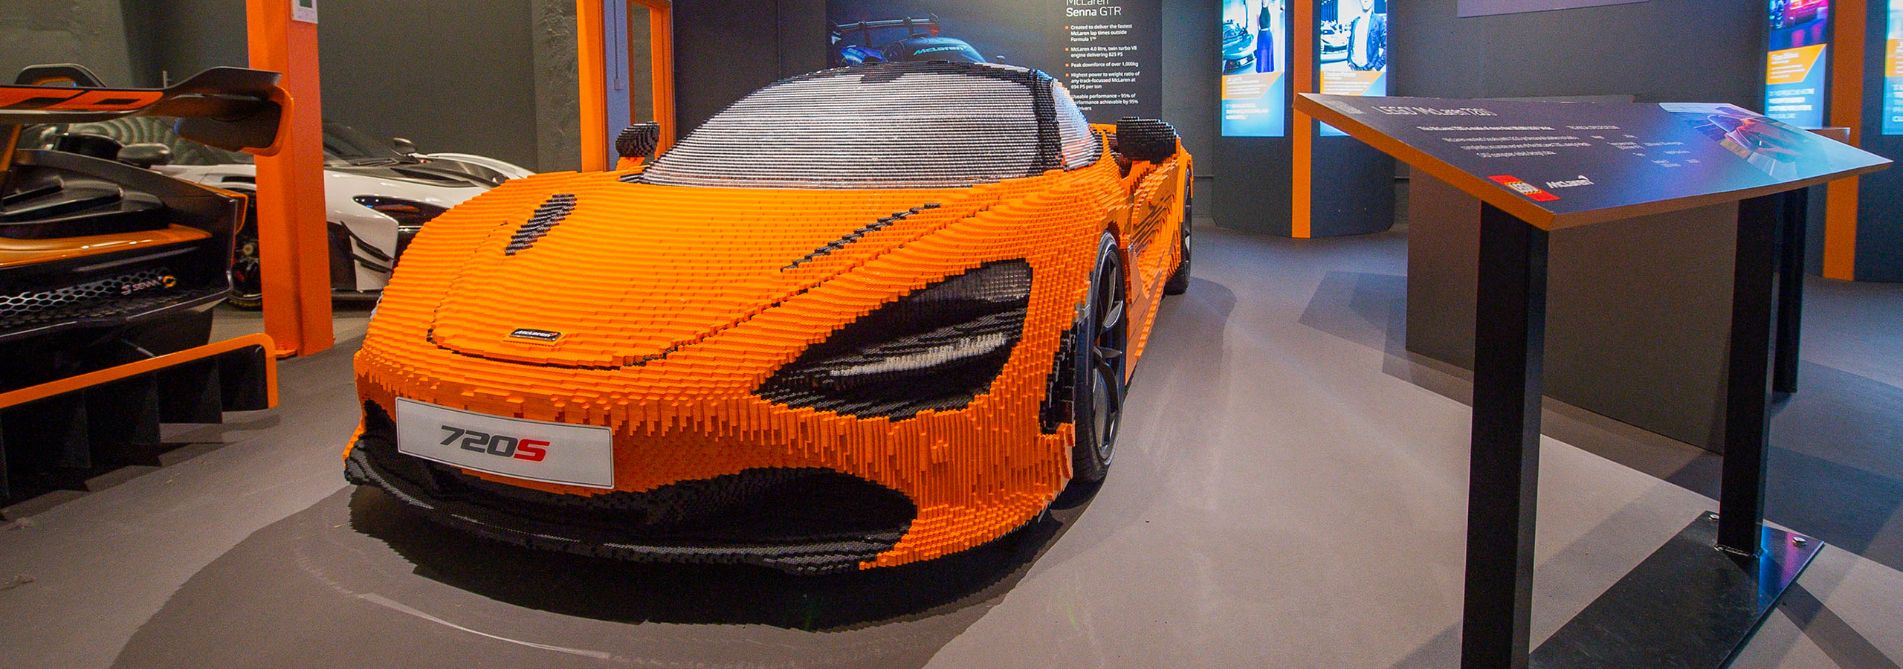 McLaren-lego-car-header-1.jpg